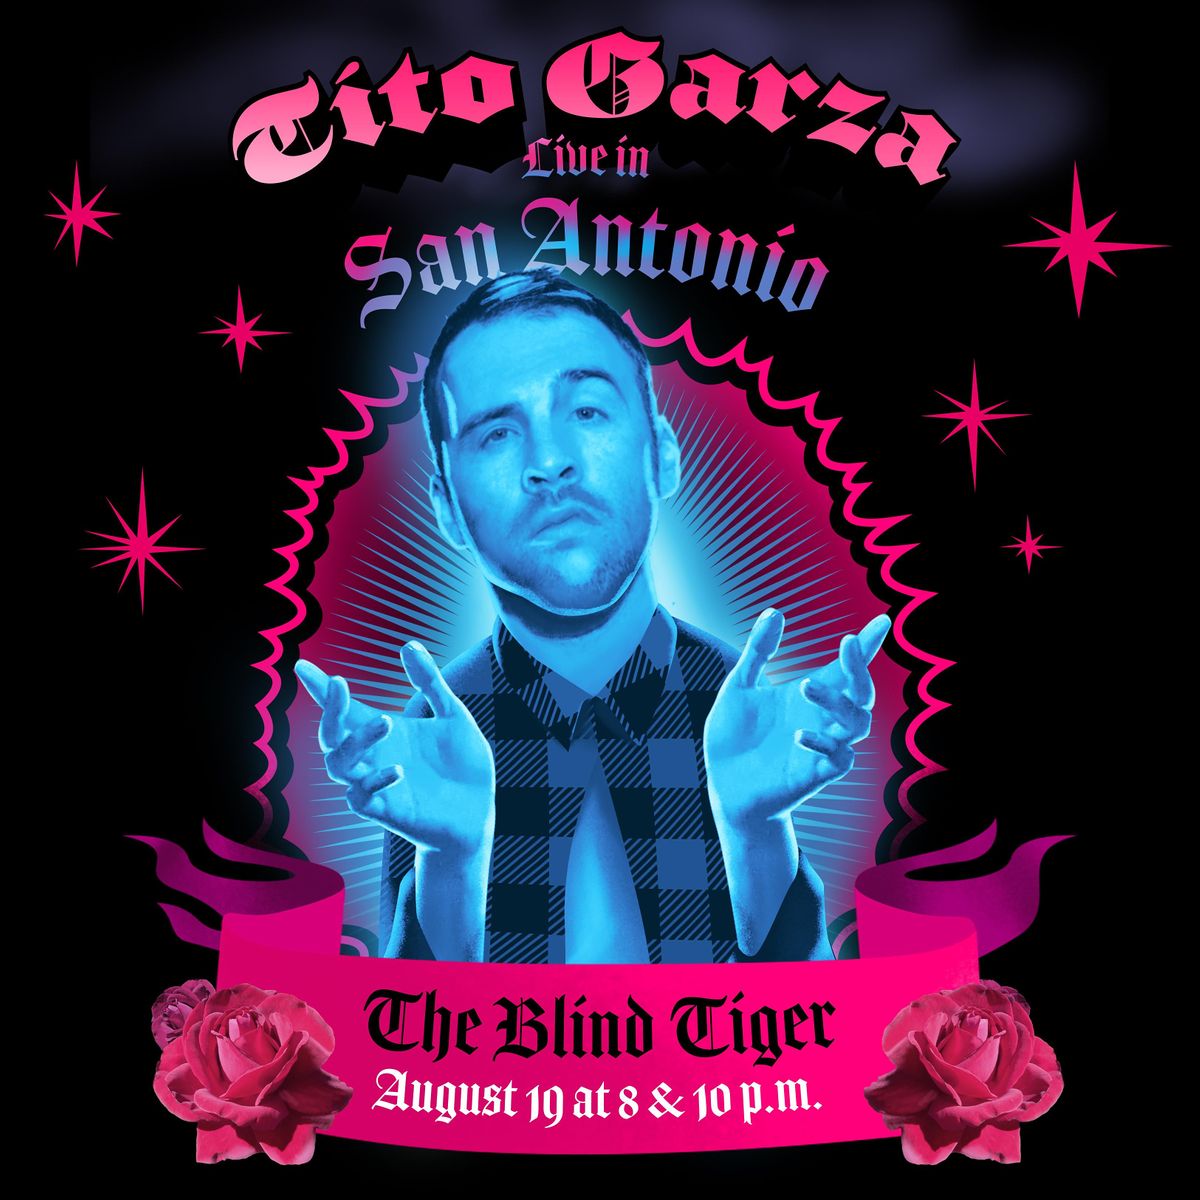 Tito Garza headlines Blind Tiger Comedy Club, 8pm